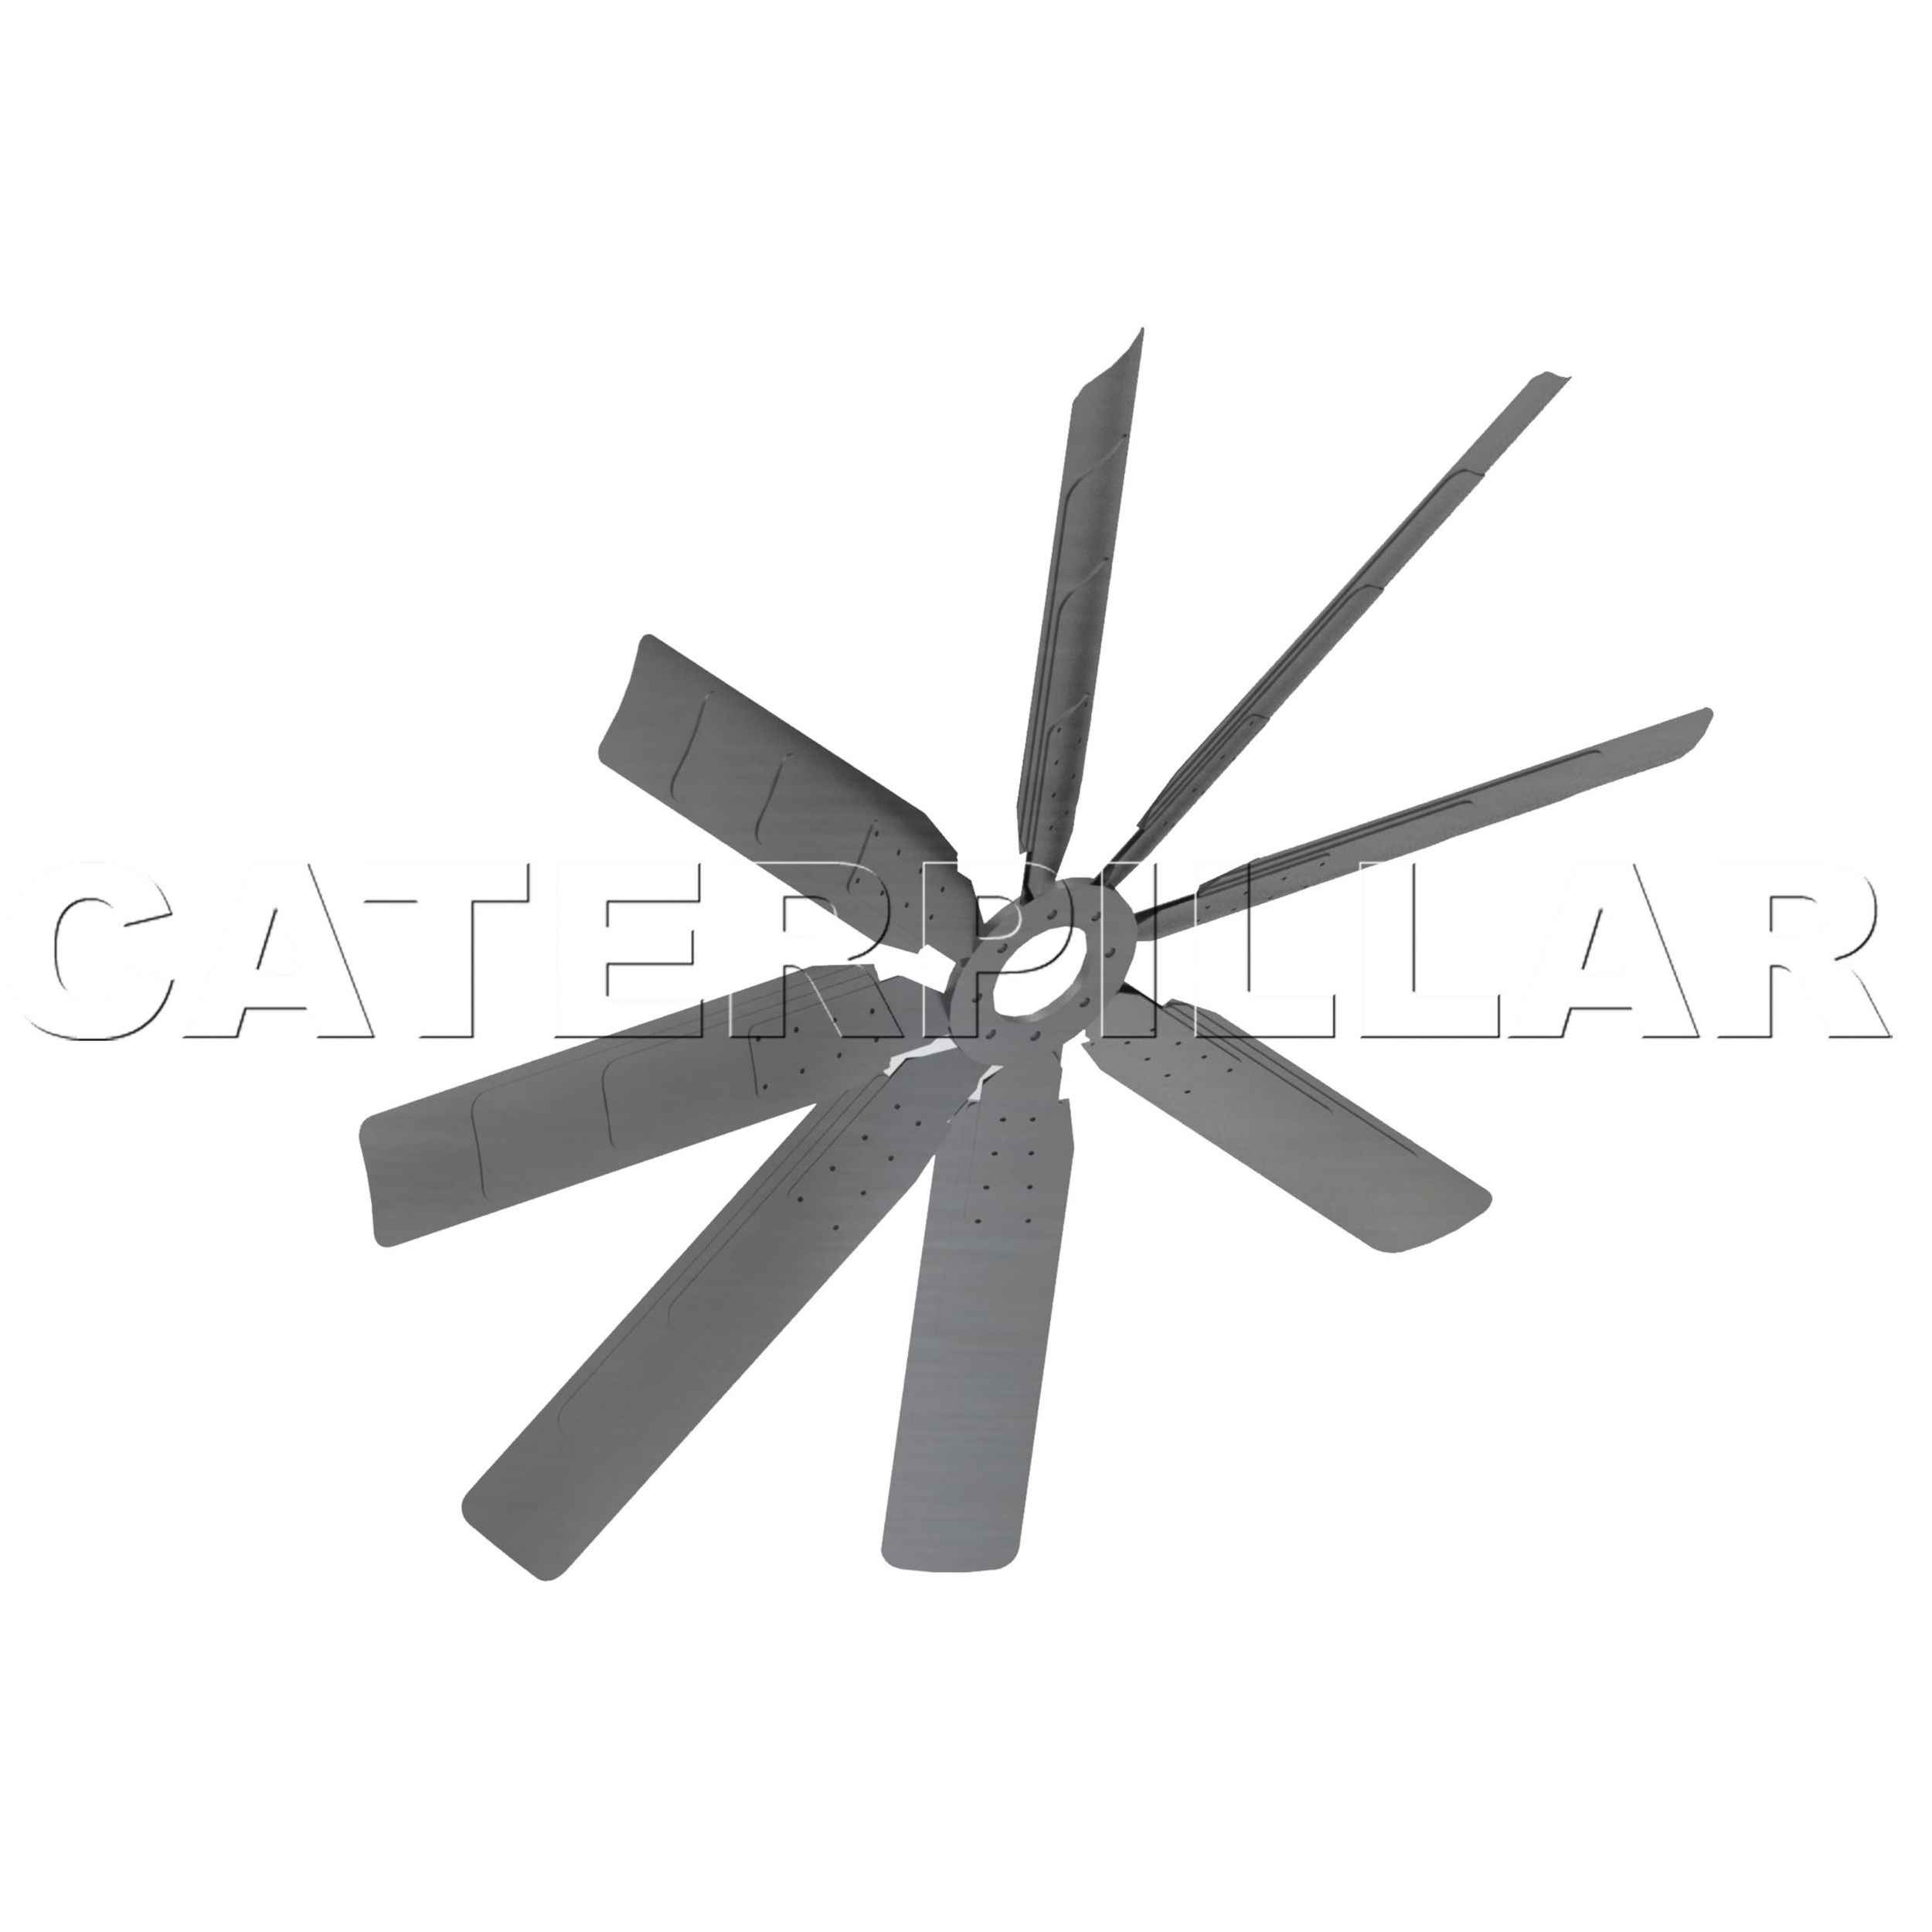 110-2740: 十字轴风扇组件